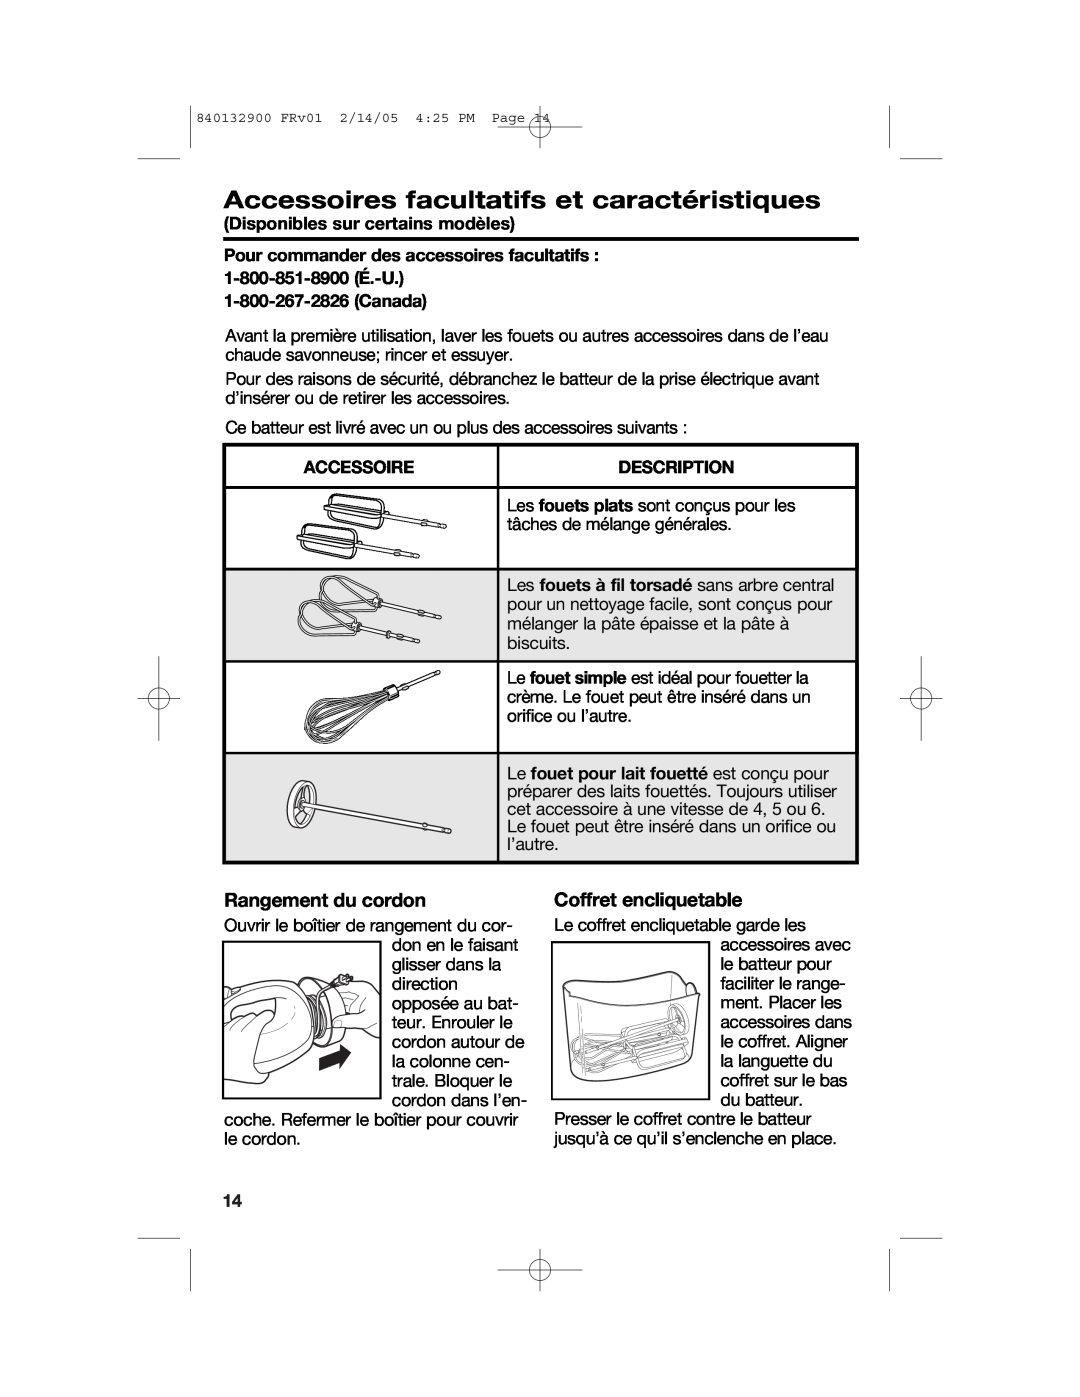 Hamilton Beach 840132900 manual Accessoires facultatifs et caractéristiques, Rangement du cordon, Coffret encliquetable 